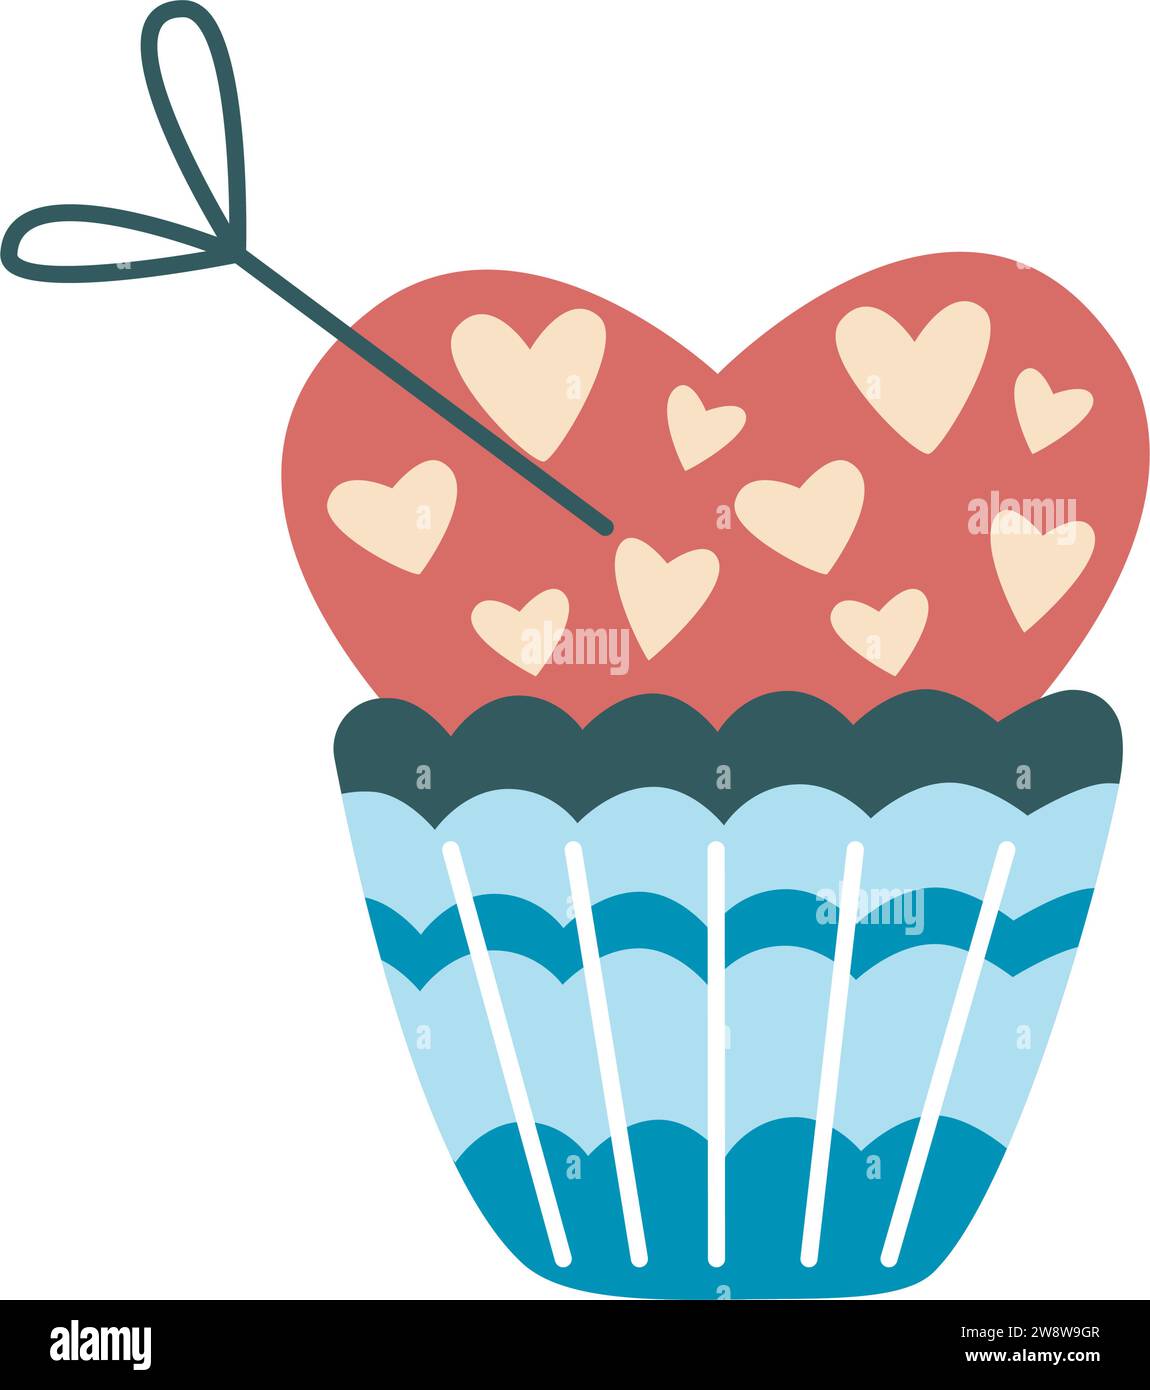 Dulce pastel con crema clip art. Cupcake dibujado a mano en forma de corazón. Delicioso pastel romántico con corazones y confeti, ilustración vectorial aislada Ilustración del Vector